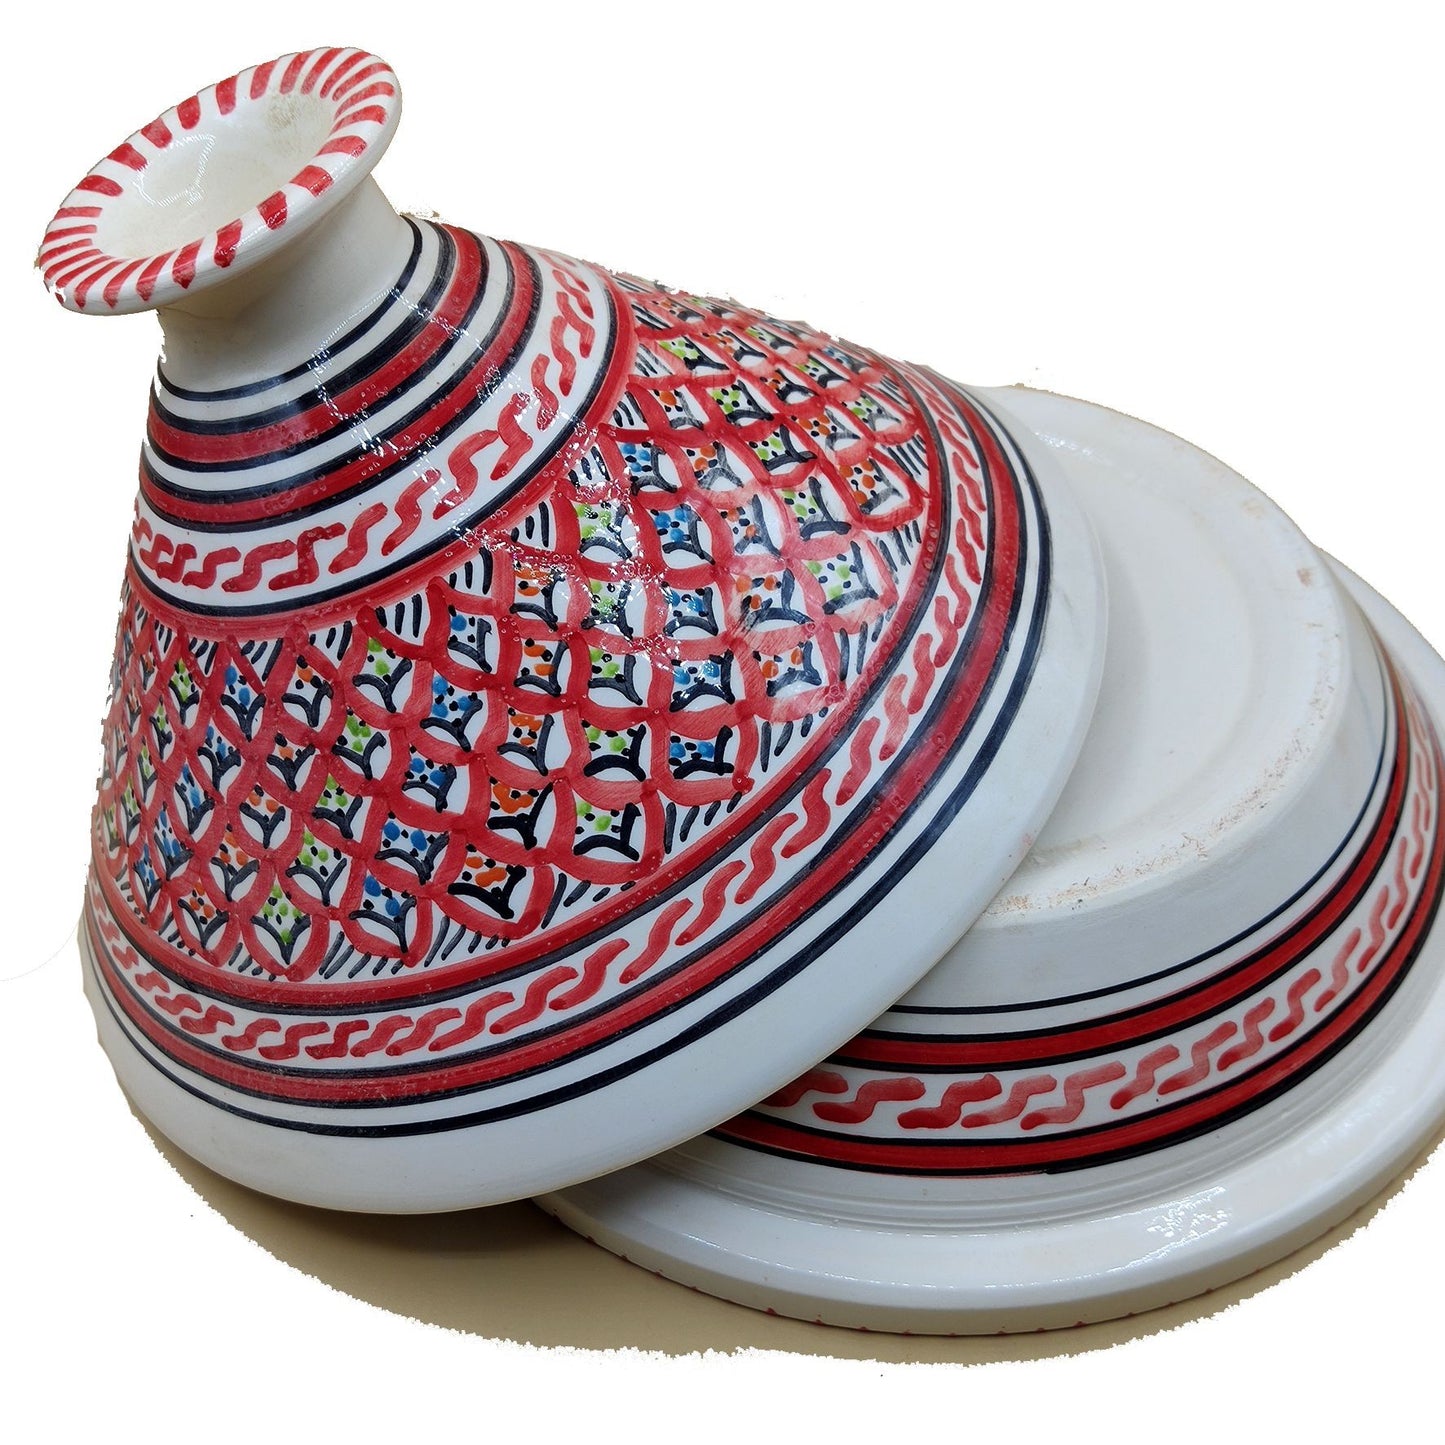 Elite Decoratieve Tajine Marokkaans Keramiek Tunesisch Etnisch Groot 0311201104